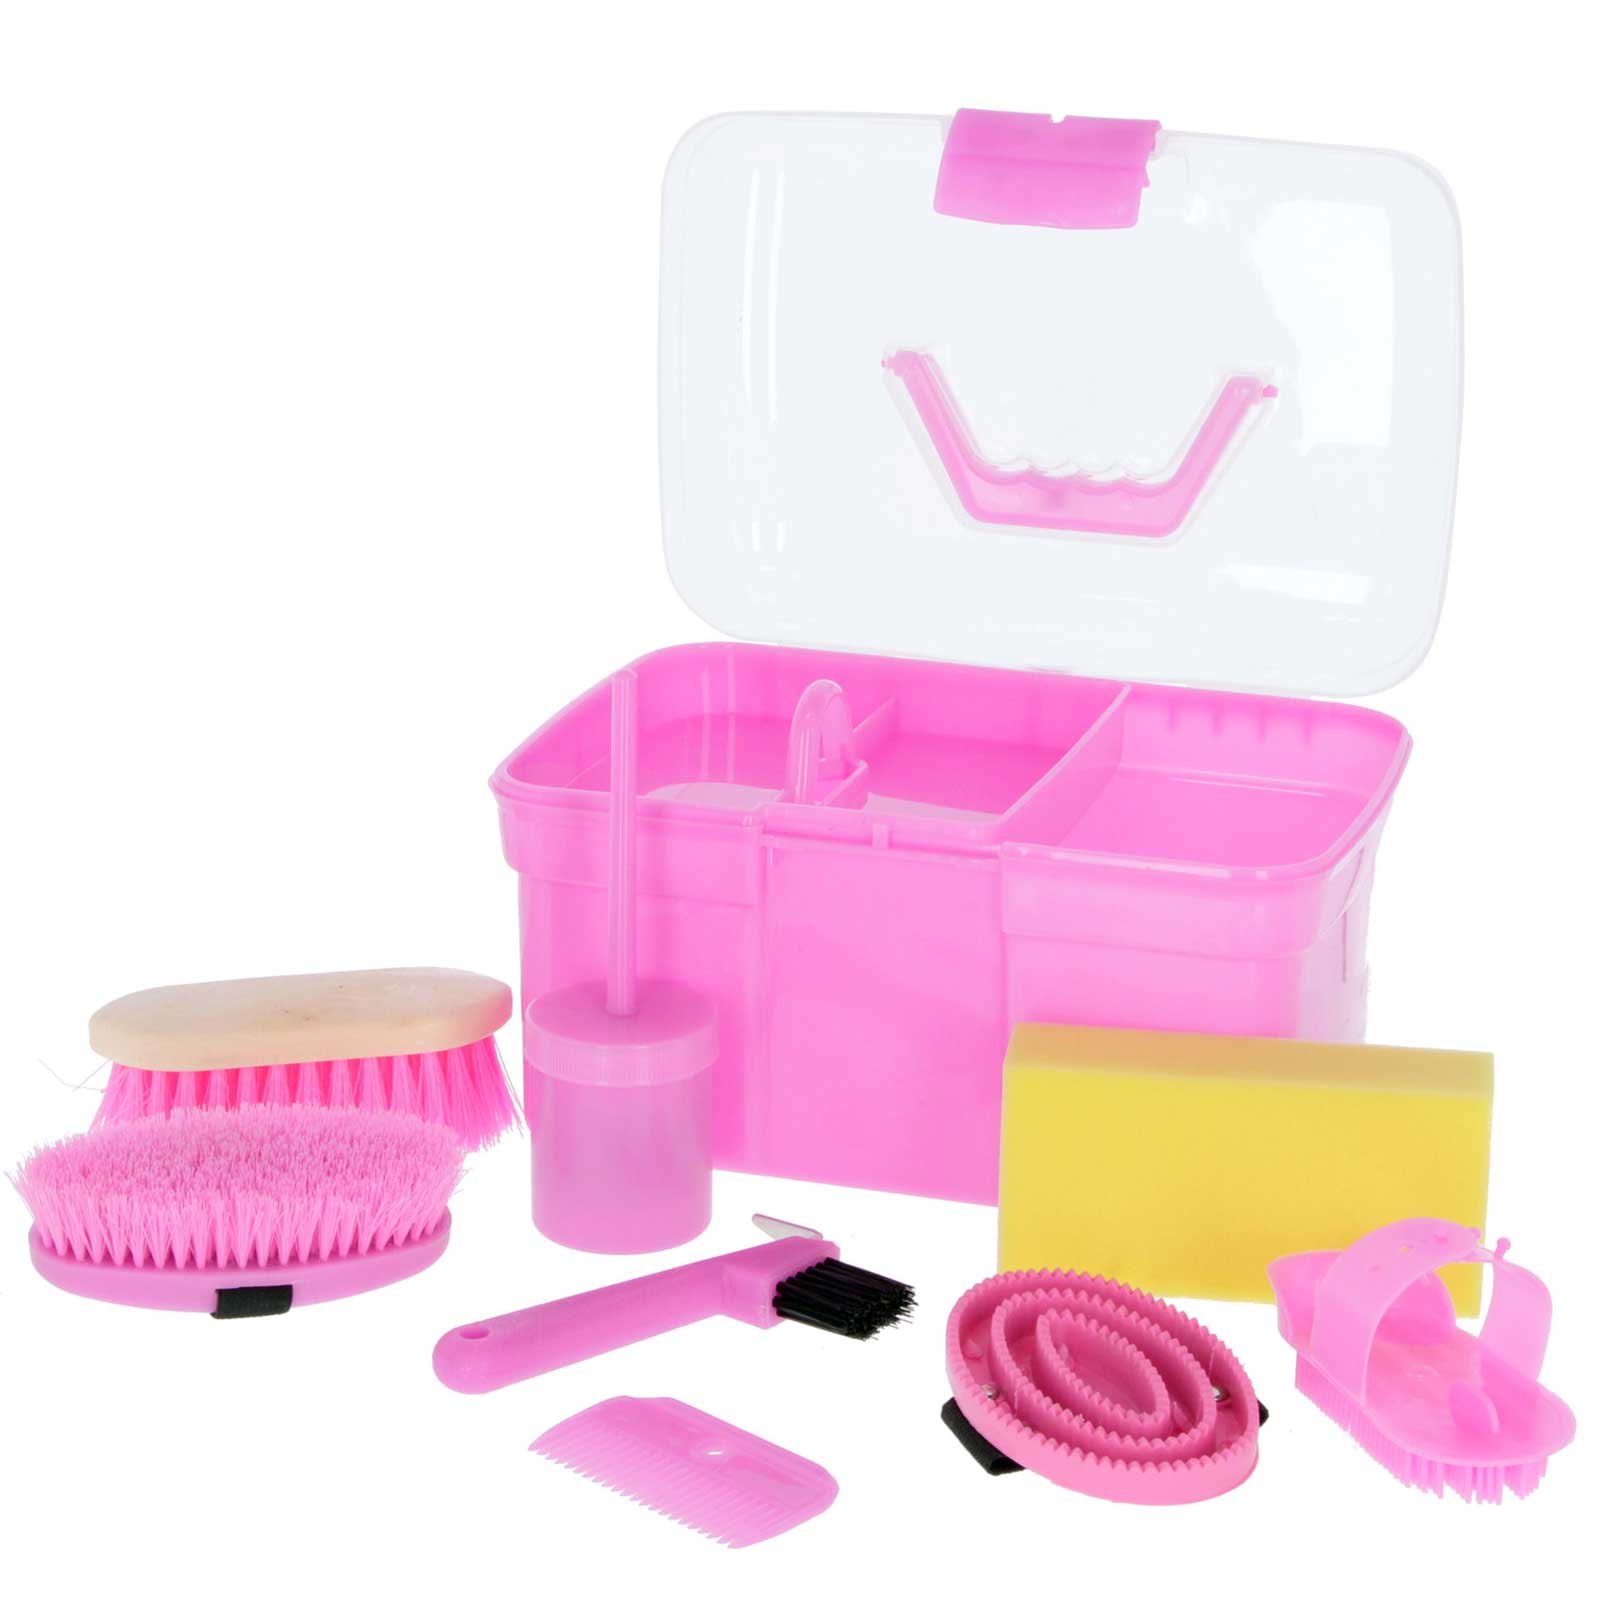 Boîte de nettoyage enfants avec contenu 8 pièces rose